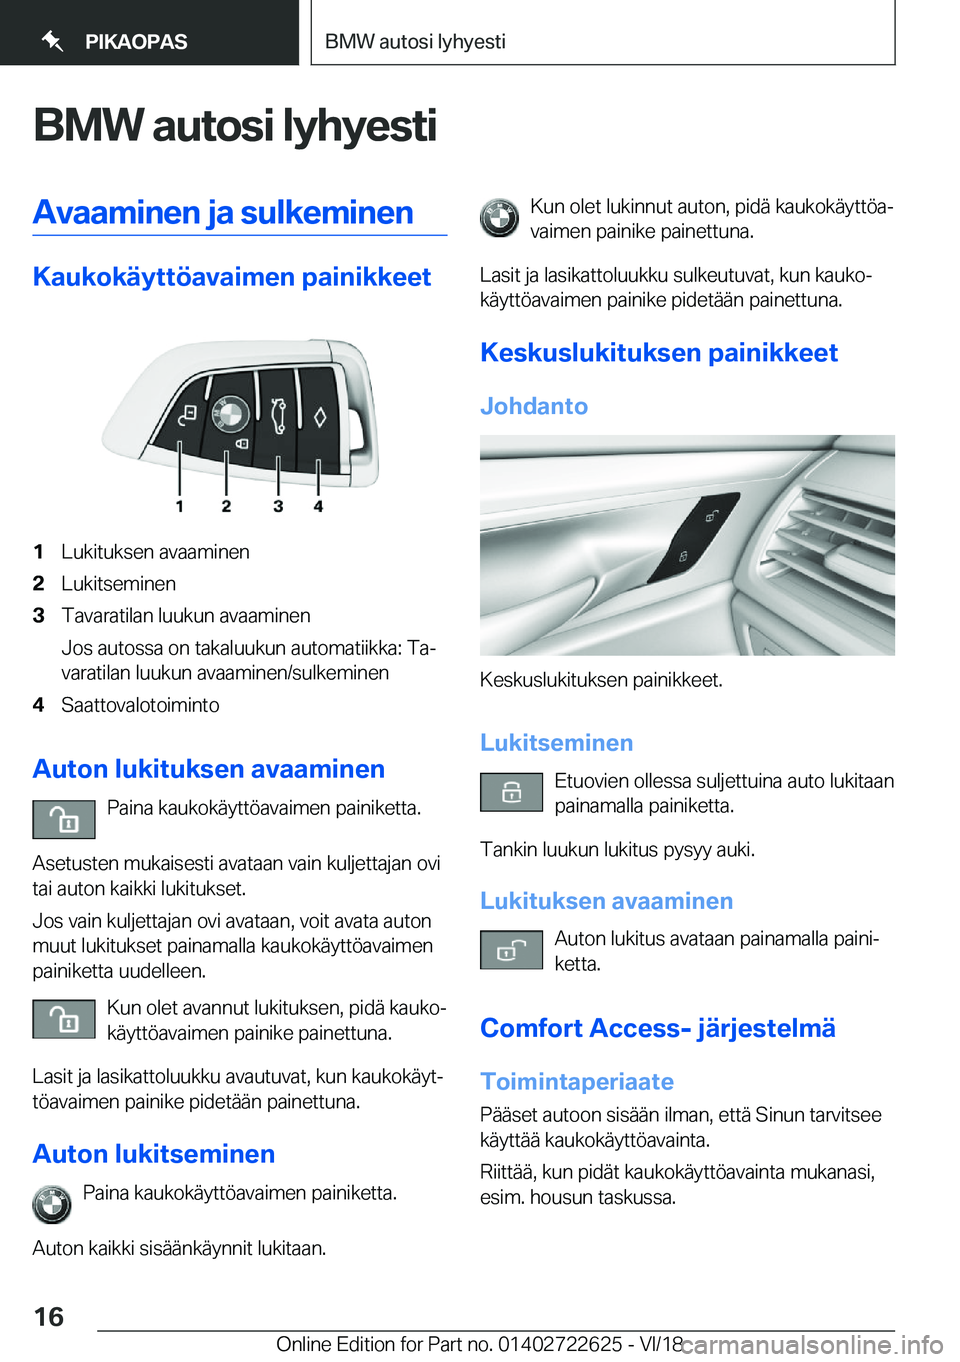 BMW 5 SERIES 2019  Omistajan Käsikirja (in Finnish) �B�M�W��a�u�t�o�s�i��l�y�h�y�e�s�t�i�A�v�a�a�m�i�n�e�n��j�a��s�u�l�k�e�m�i�n�e�n
�K�a�u�k�o�k�